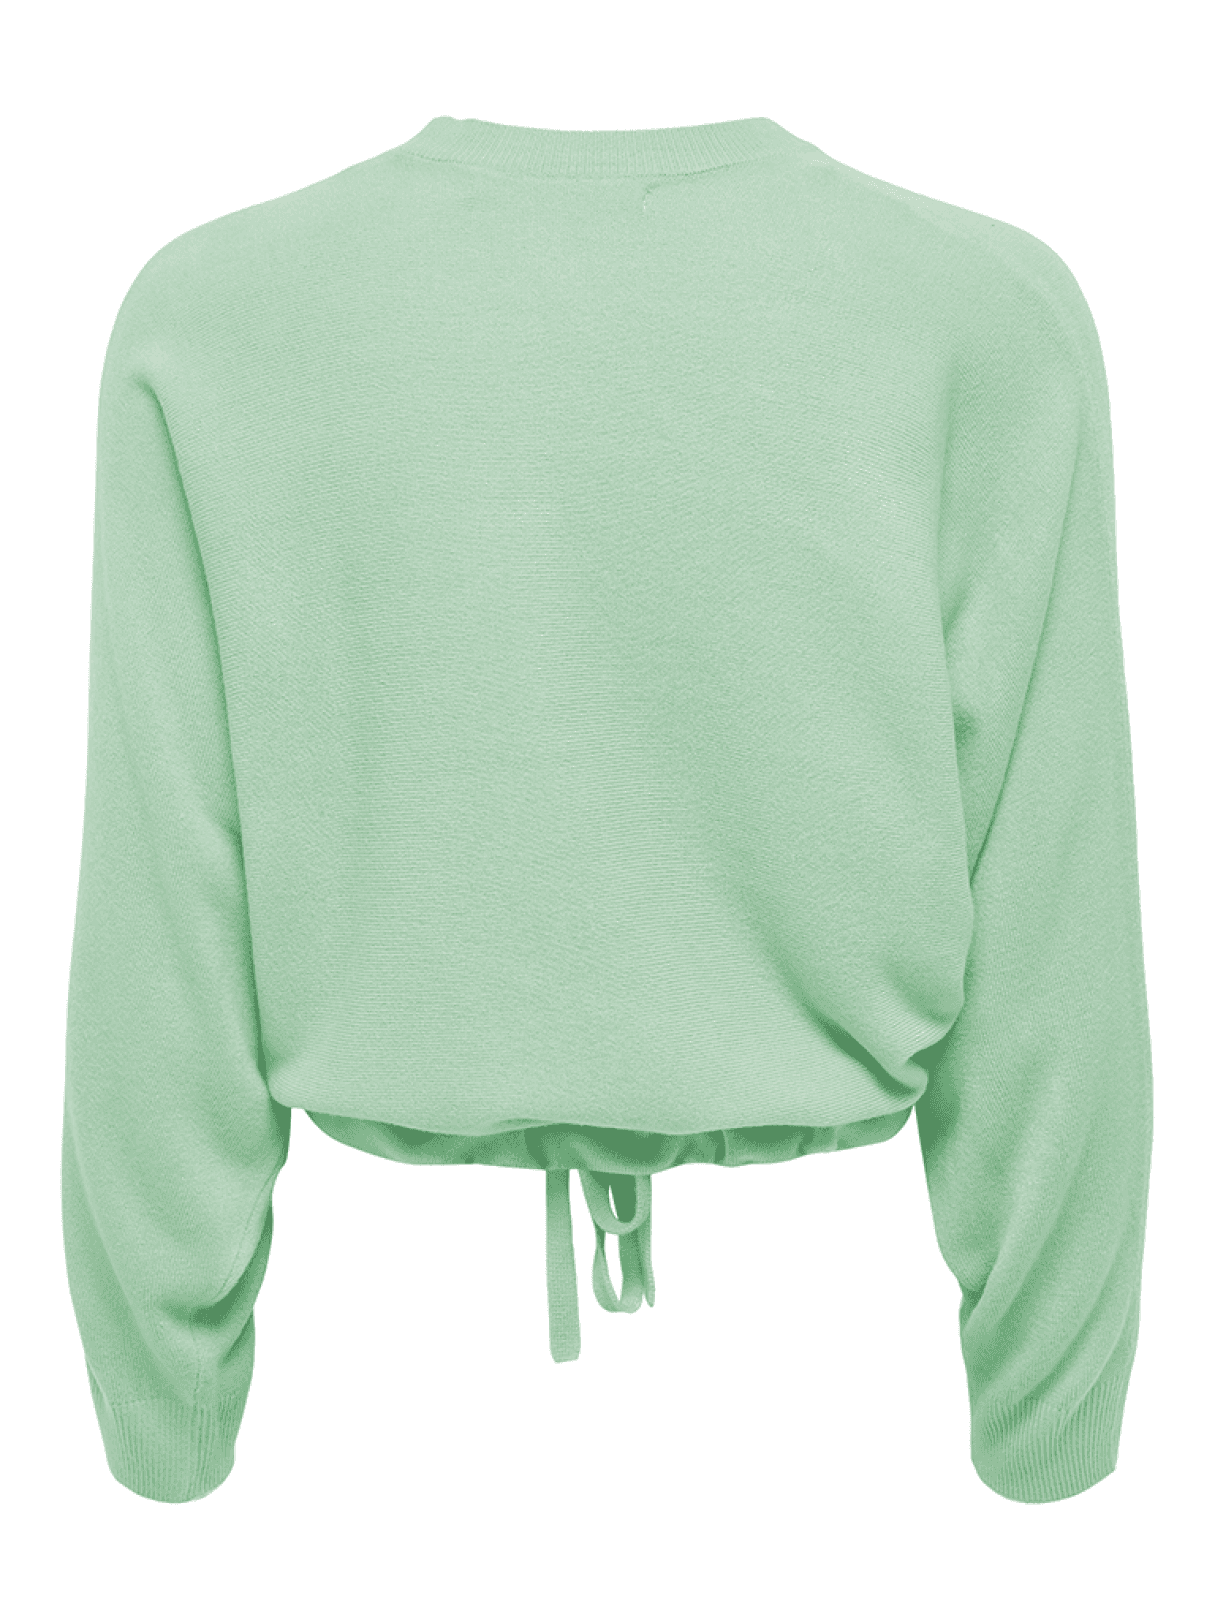 ONLY Ženski džemper Amalia, Zeleni